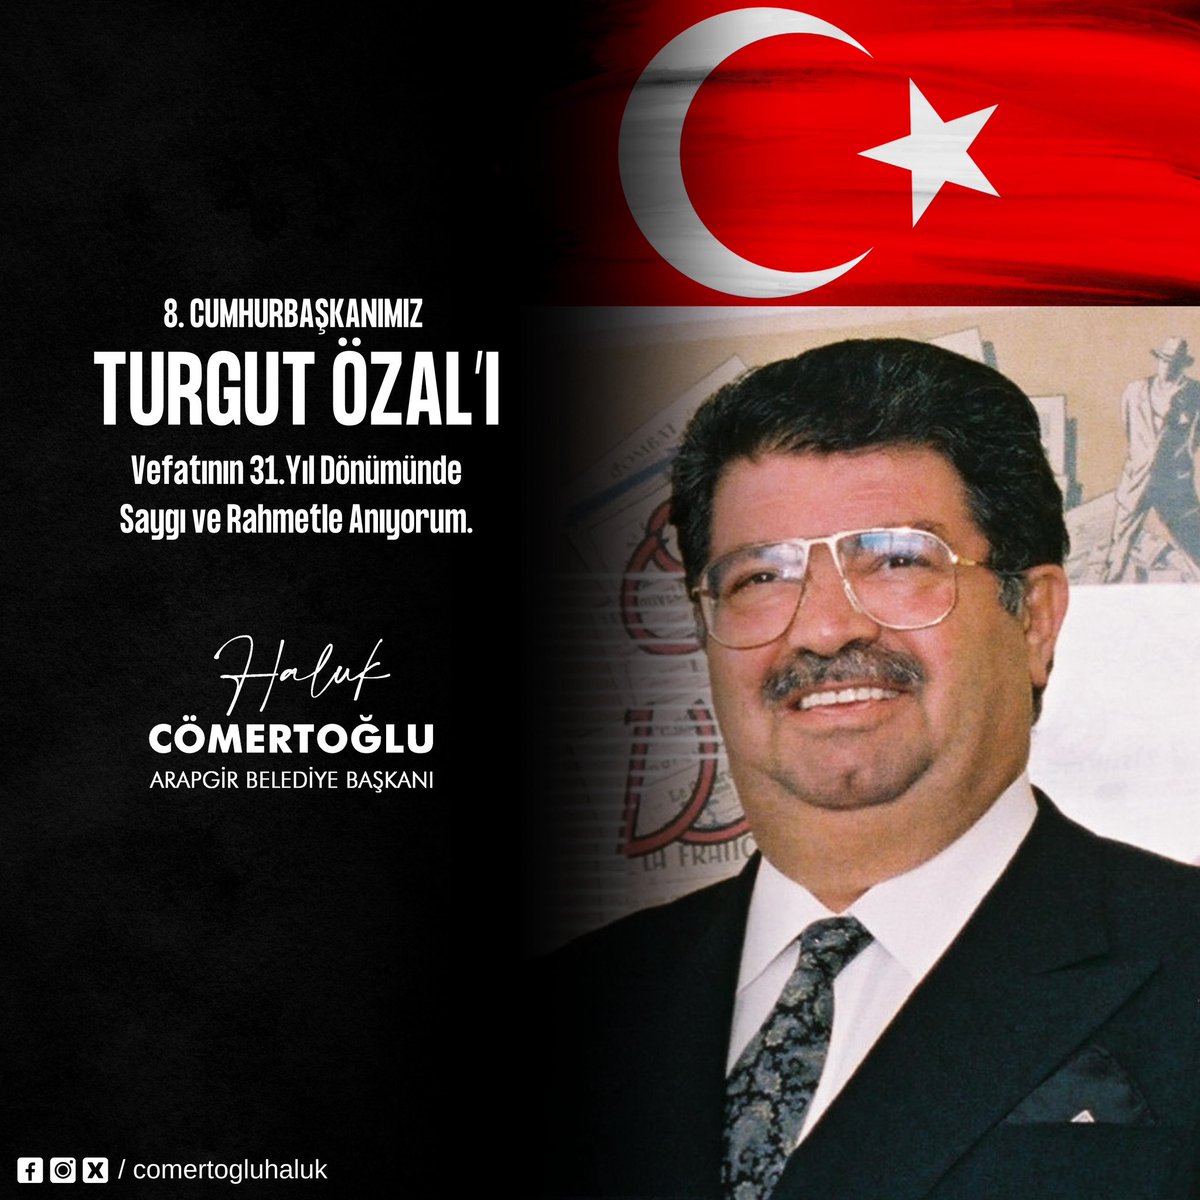 8.Cumhurbaşkanımız Turgut Özal'ı vefatının 31. yıl dönümünde saygı ve rahmetle anıyorum.